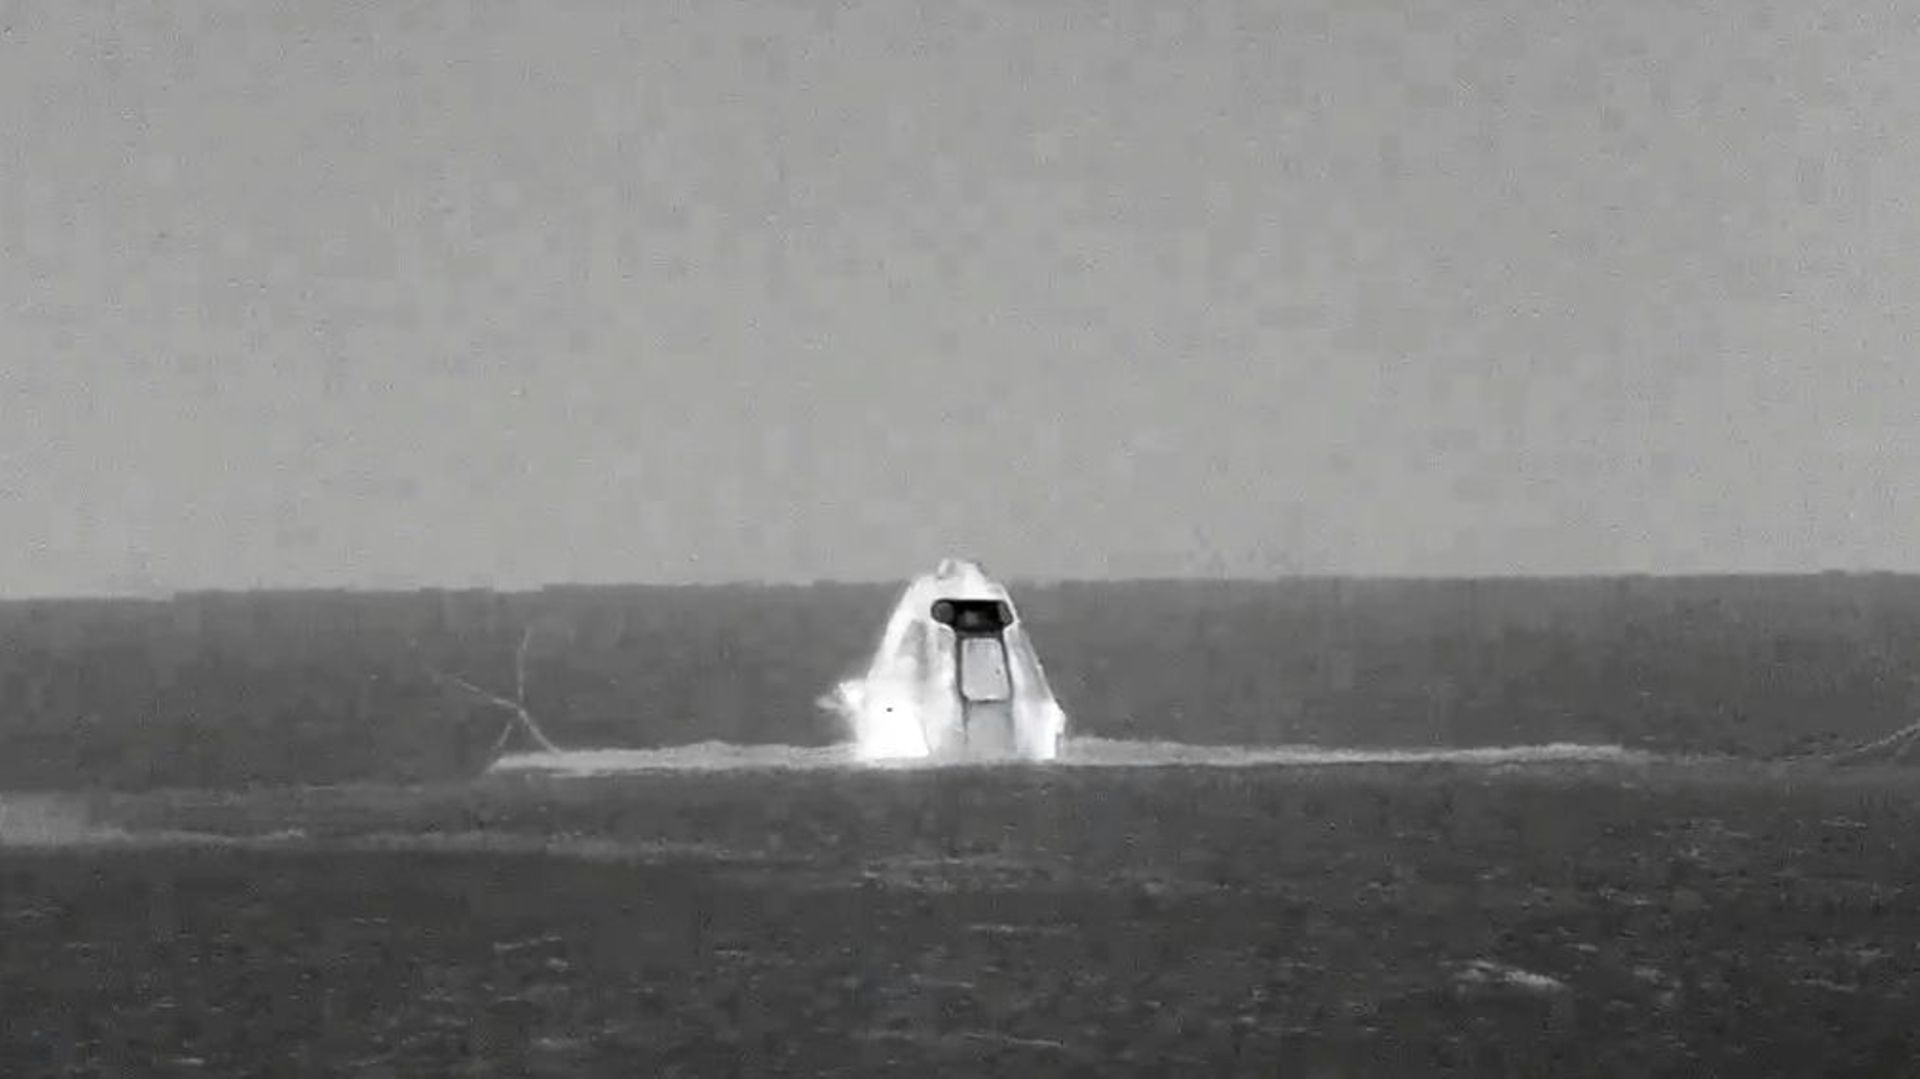 Amerrissage de la capsule Dragon de SpaceX dans les eaux du Golfe du Mexique, le 6 mai 2022 au large de Tampa, en Floride